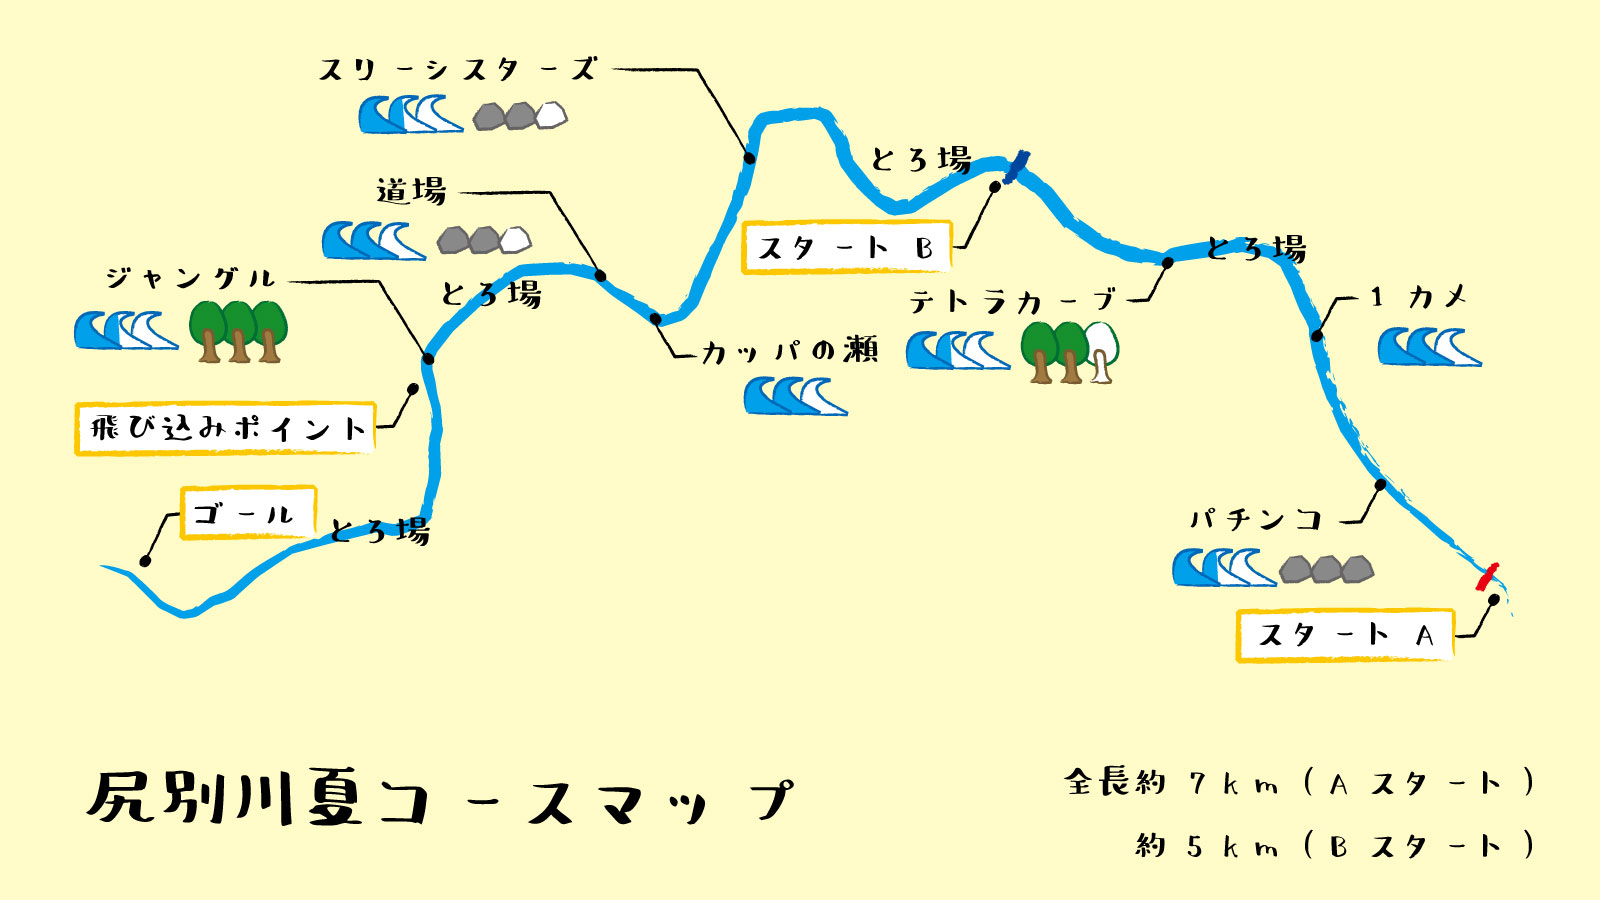 niseko-rafting-course-map2